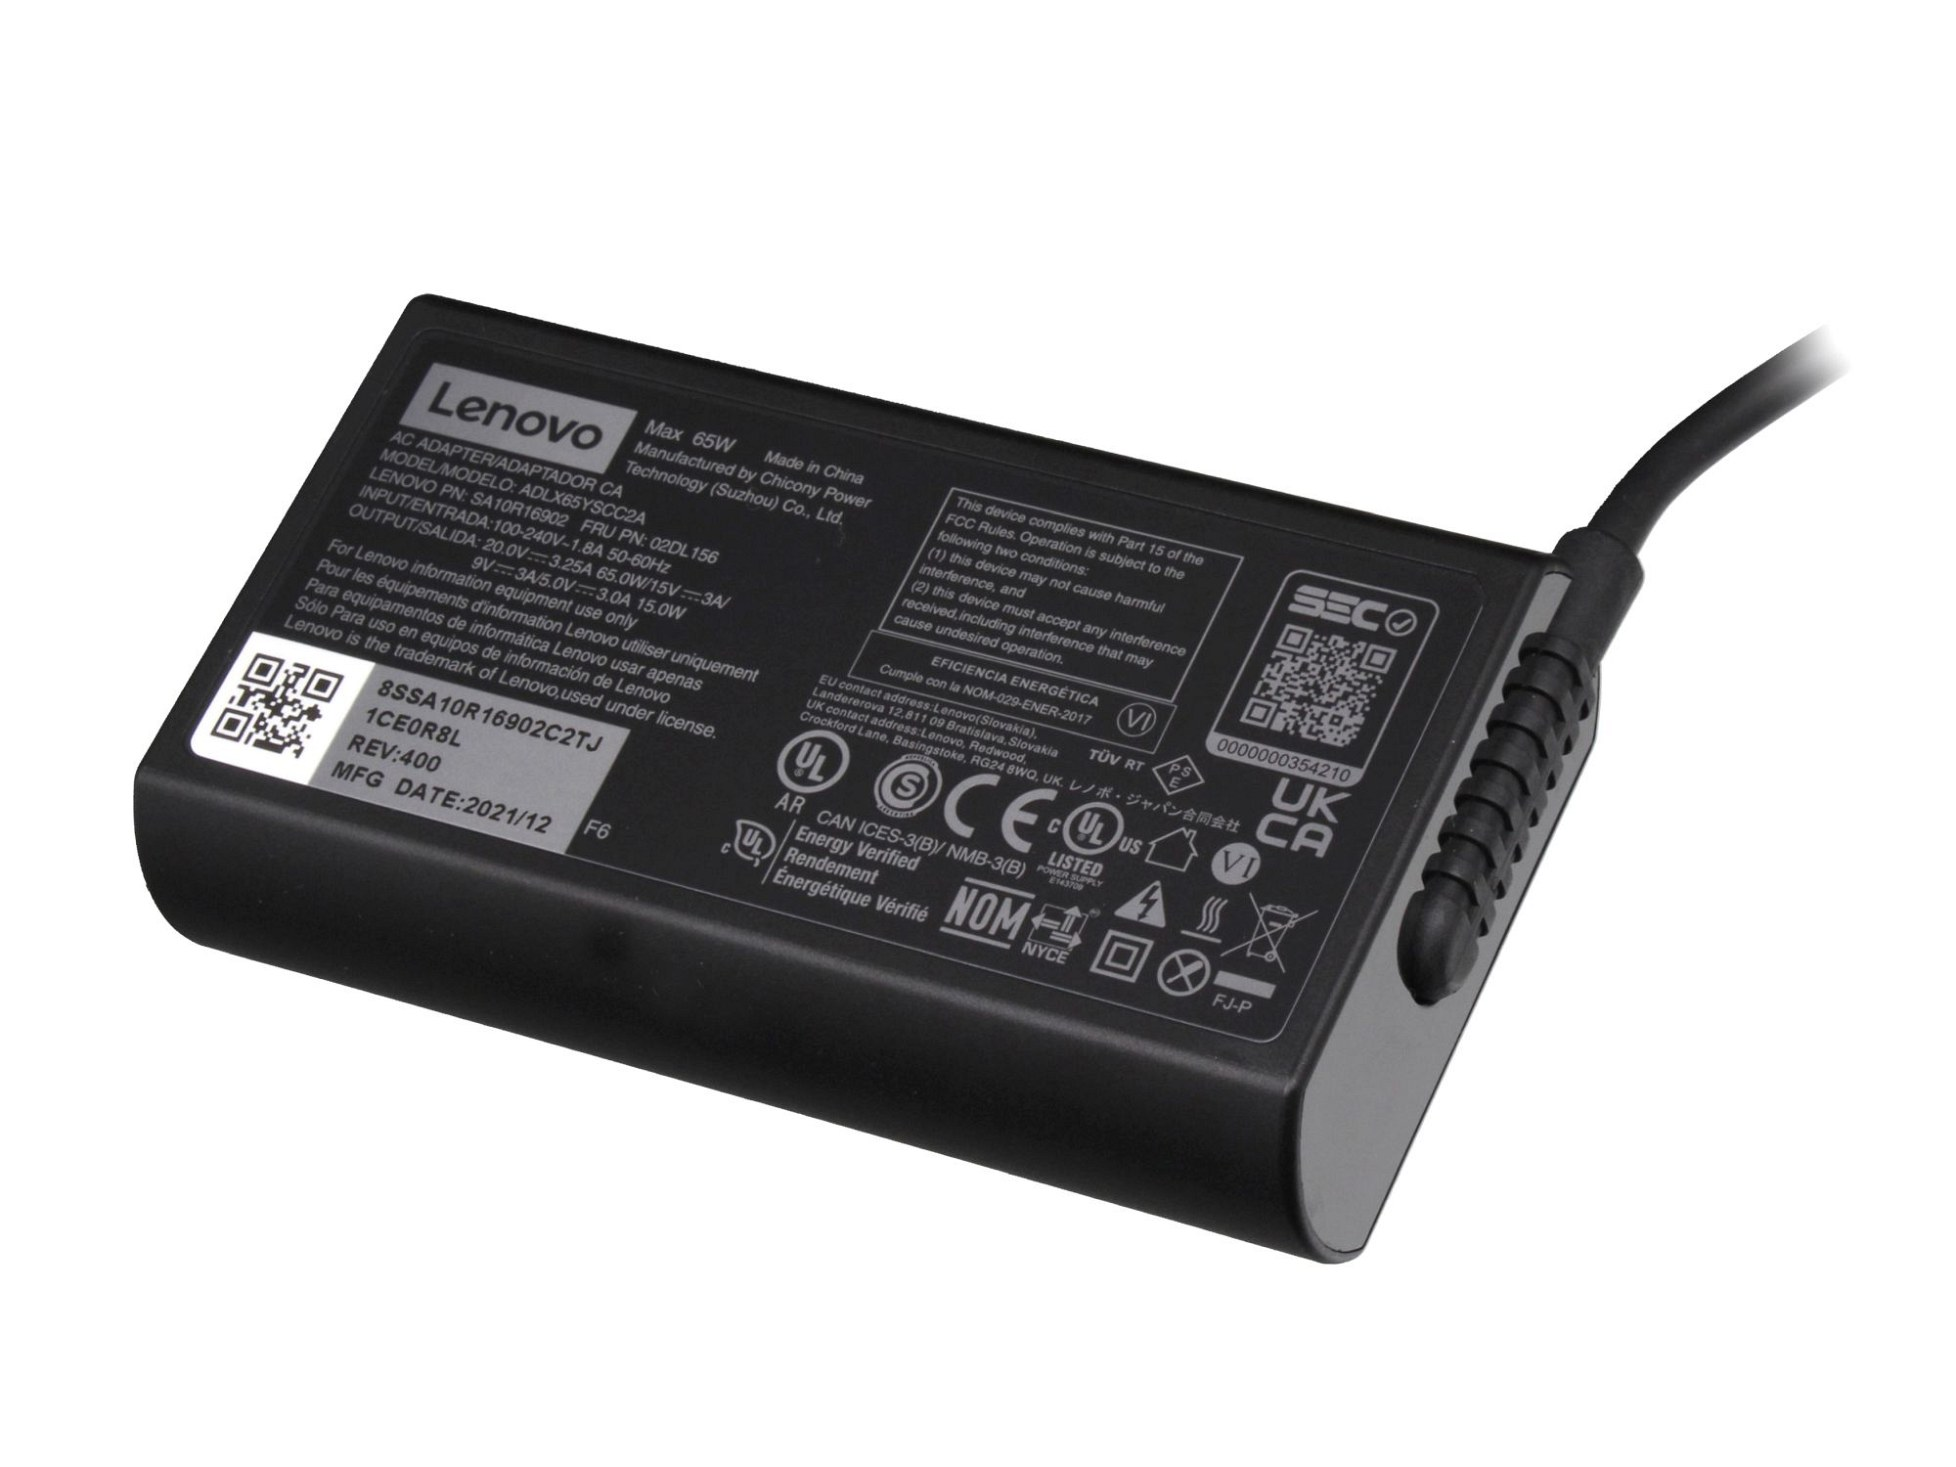 LENOVO 5A11J62100 abgerundetes Original 65 USB-C Watt Netzteil